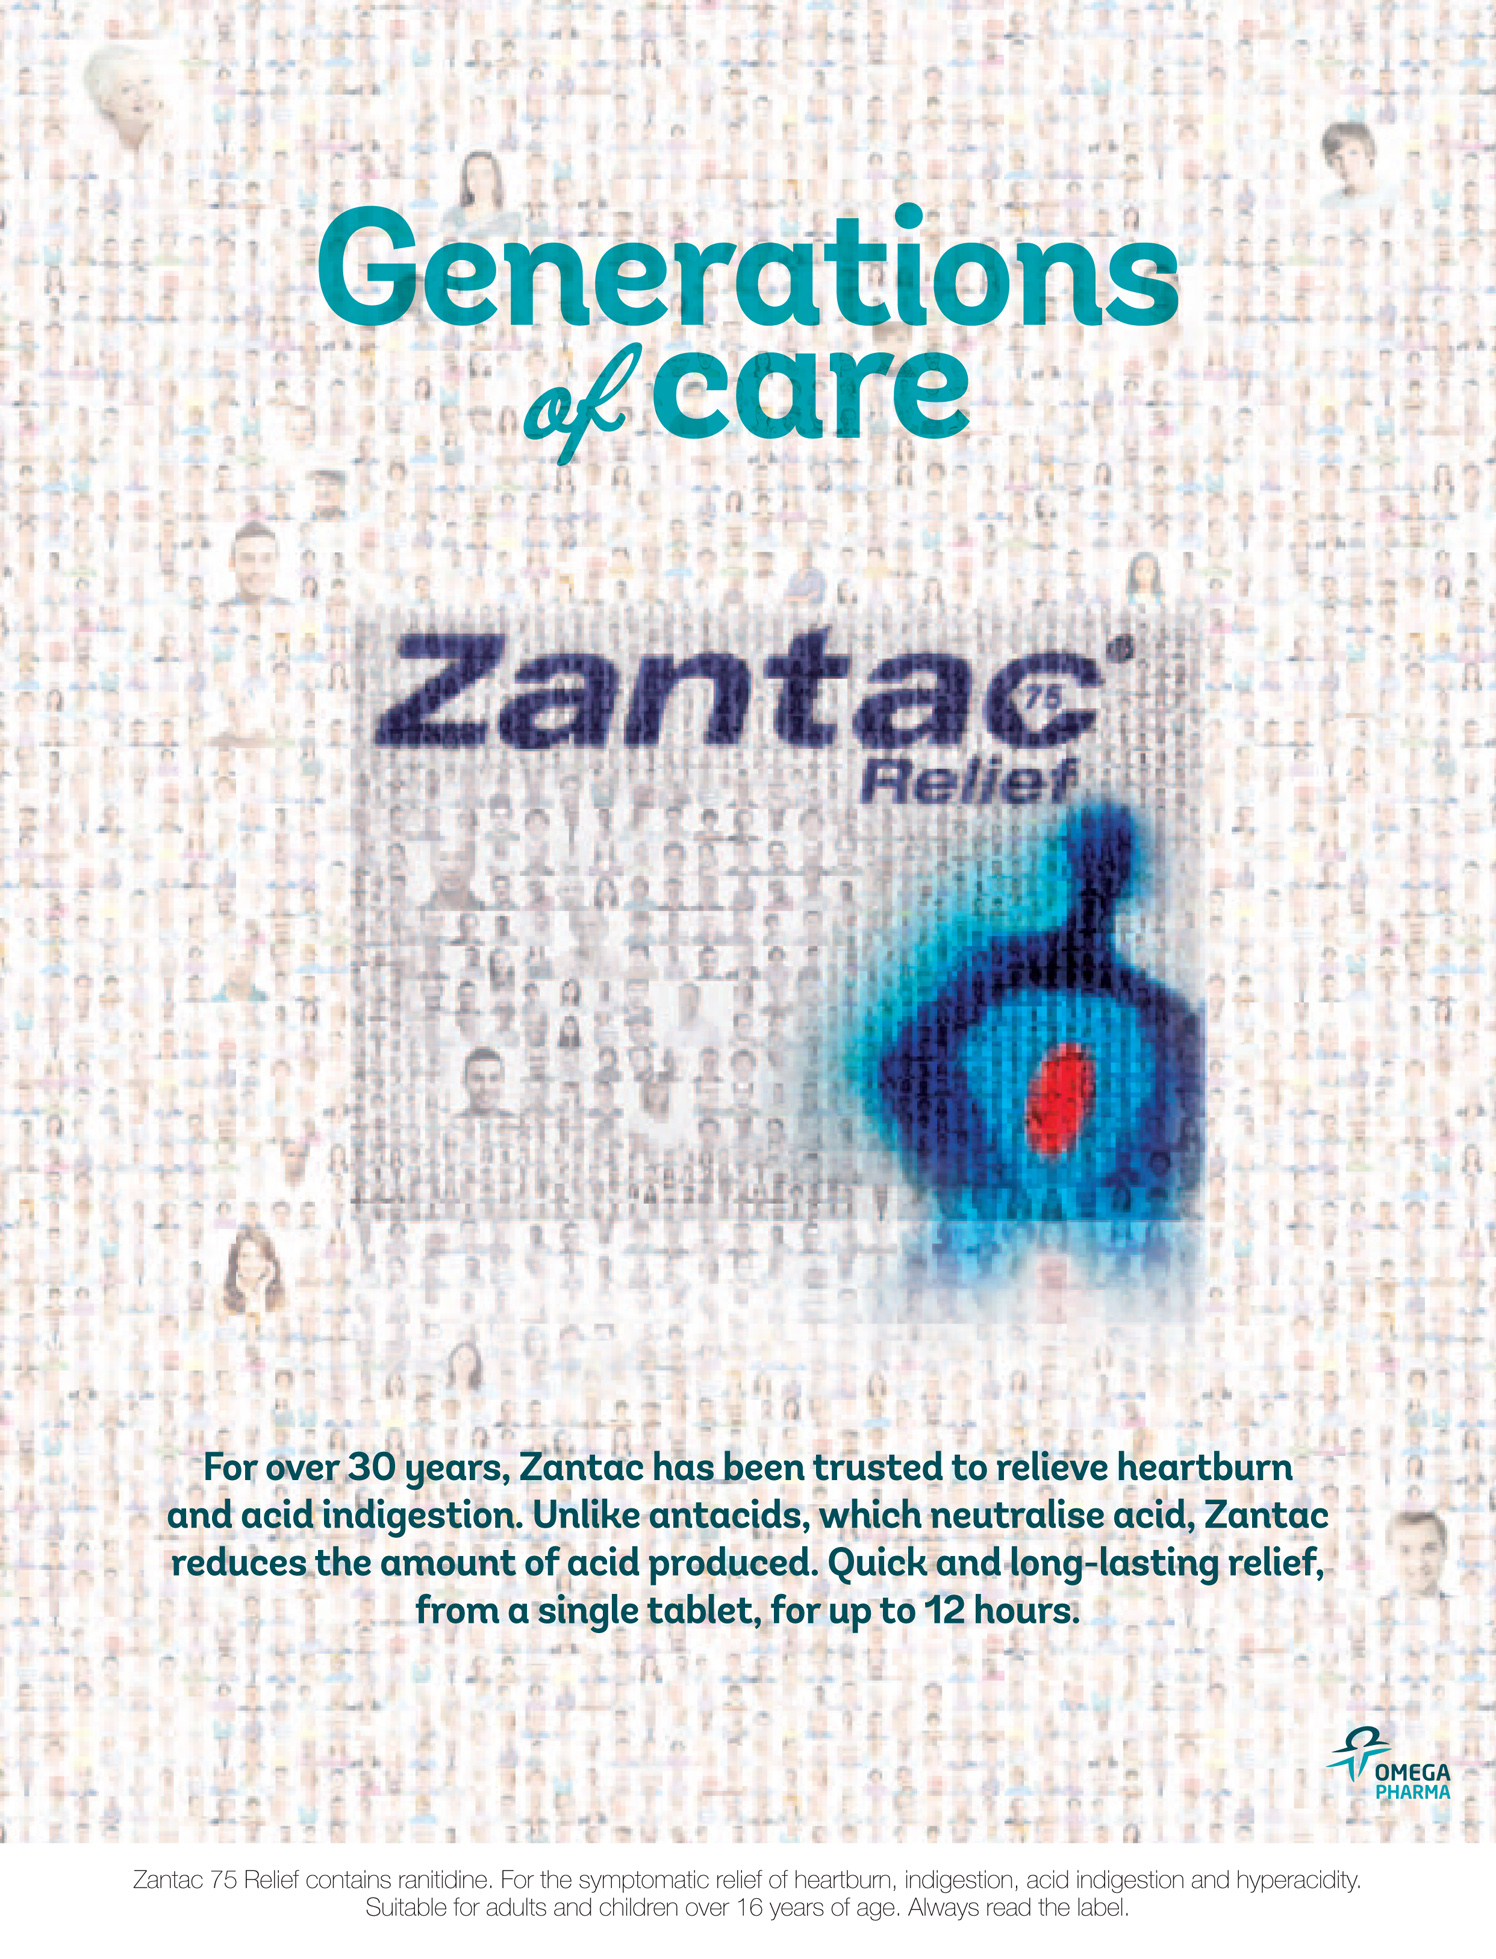 Zantac / Omega Pharma